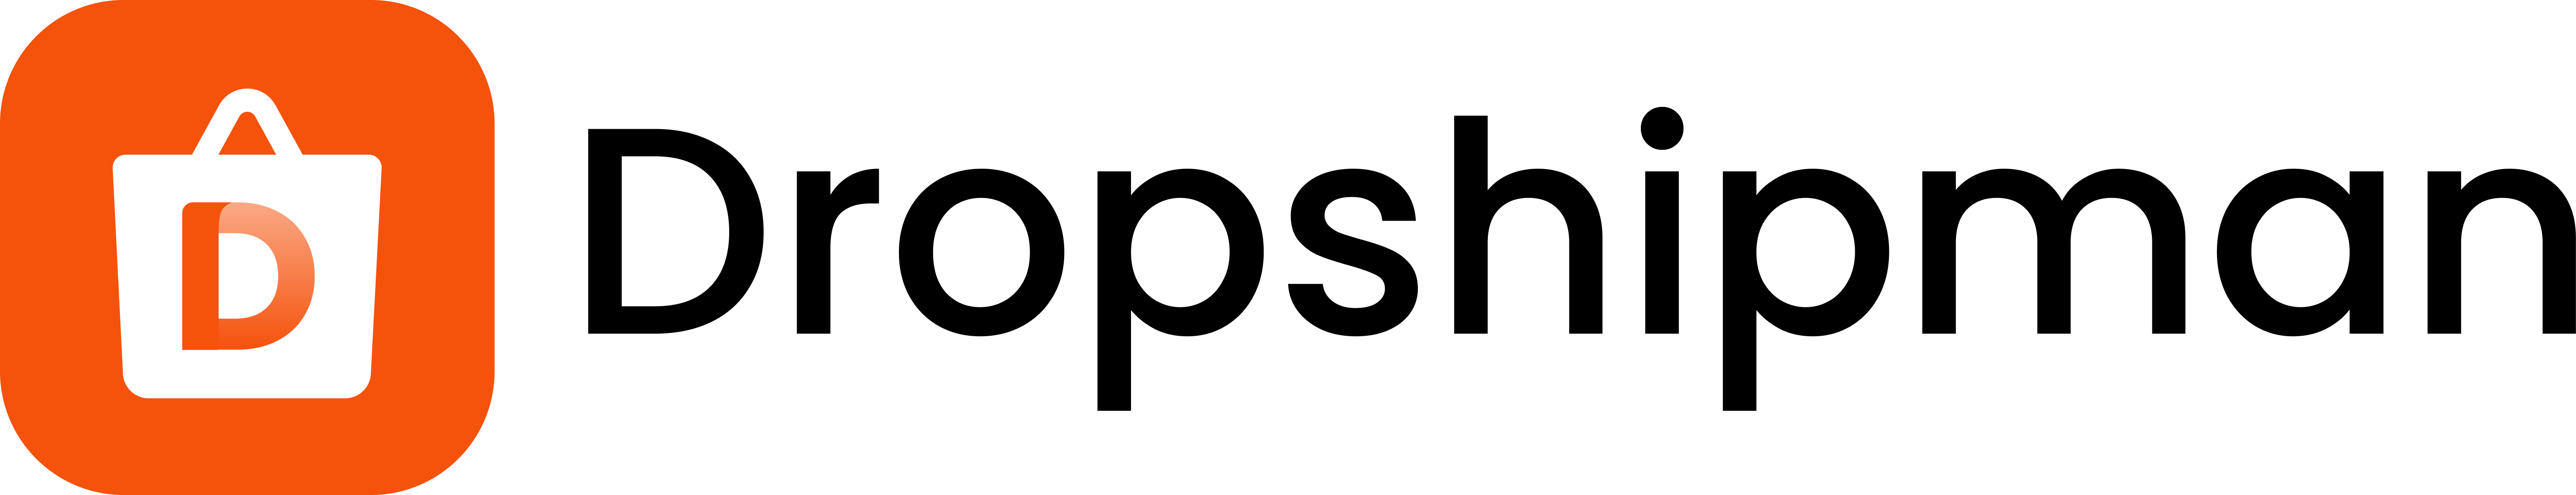 Dropshipman logo